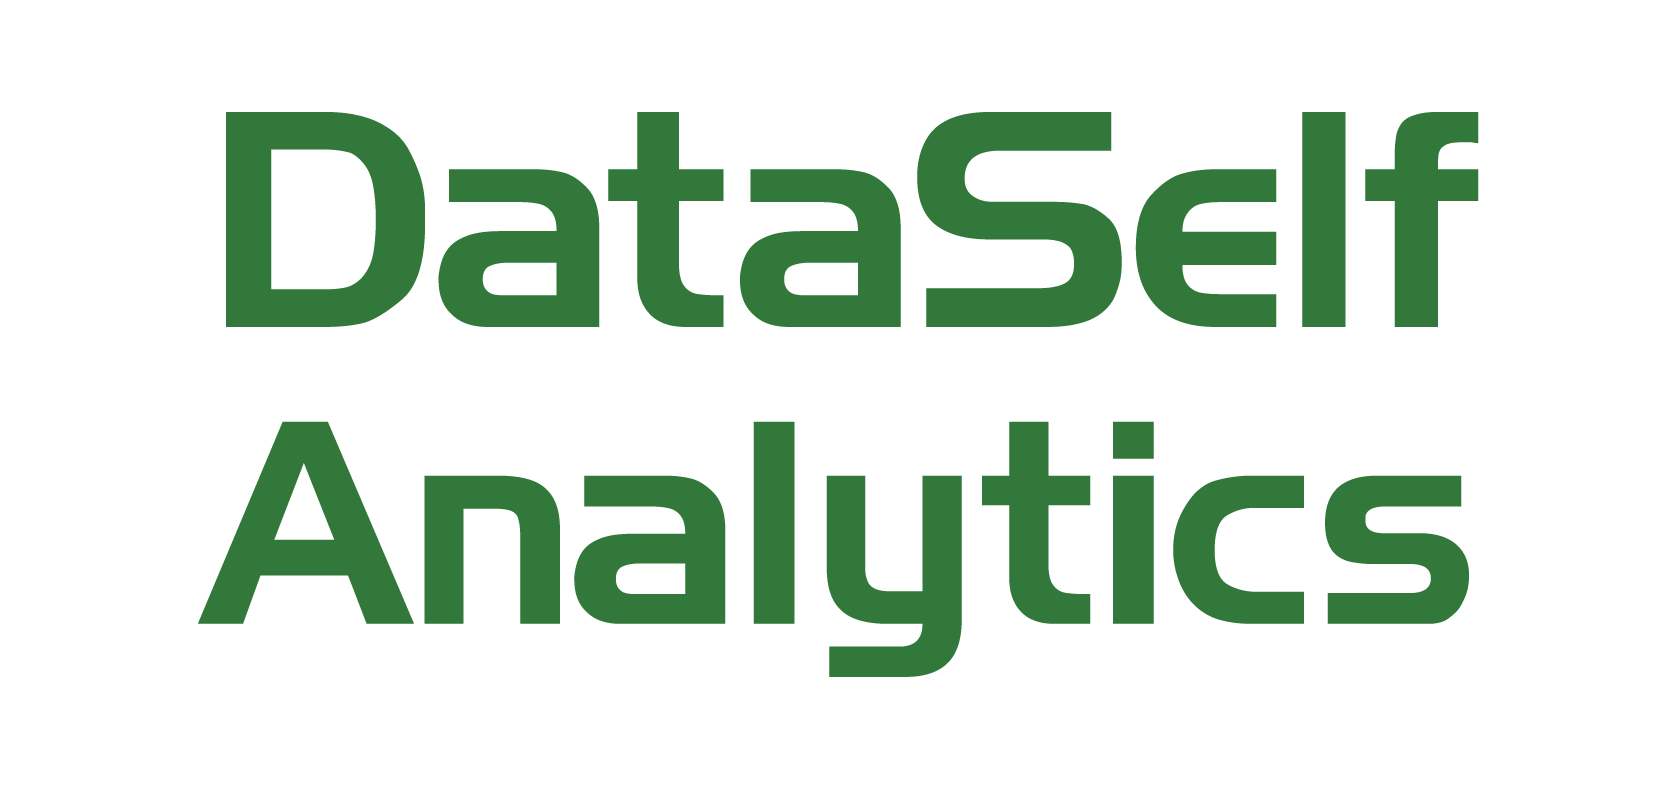 DataSelf Analytics for NetSuite